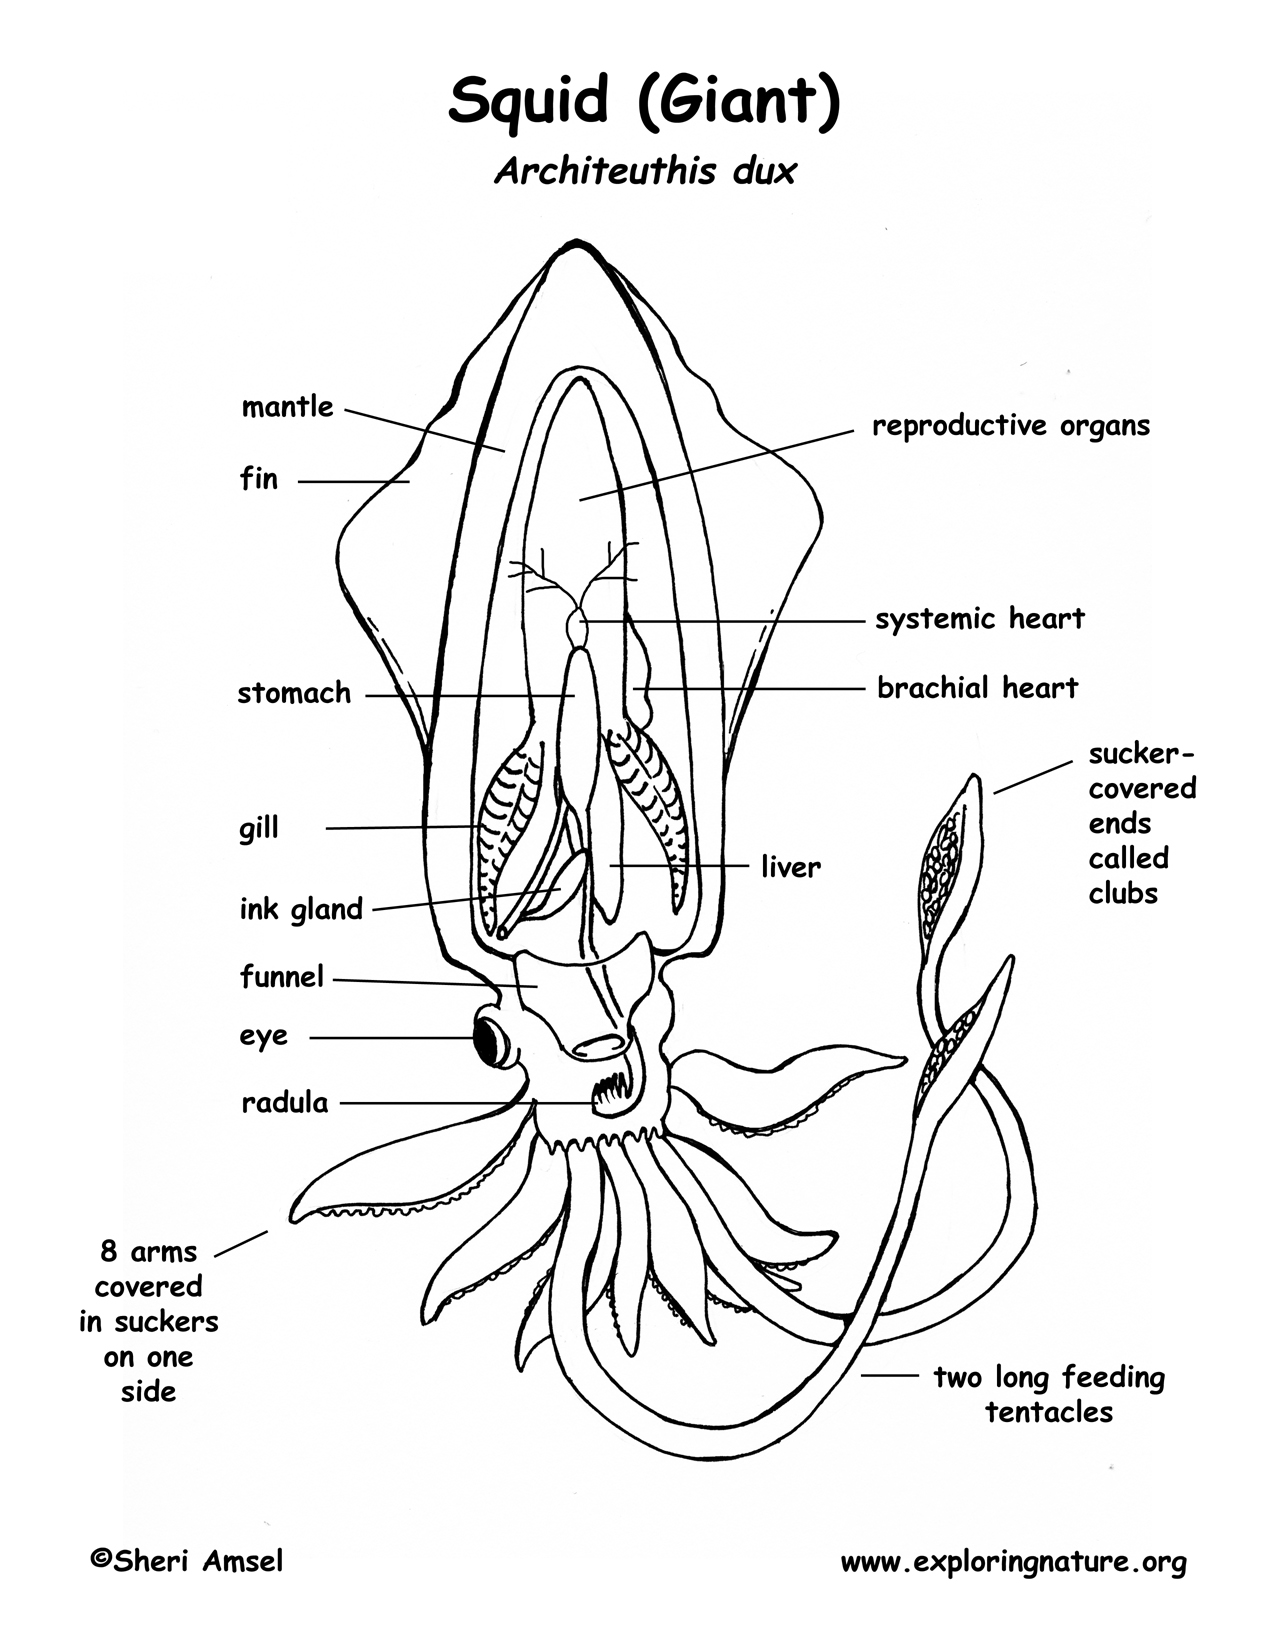 vampire squid diagram